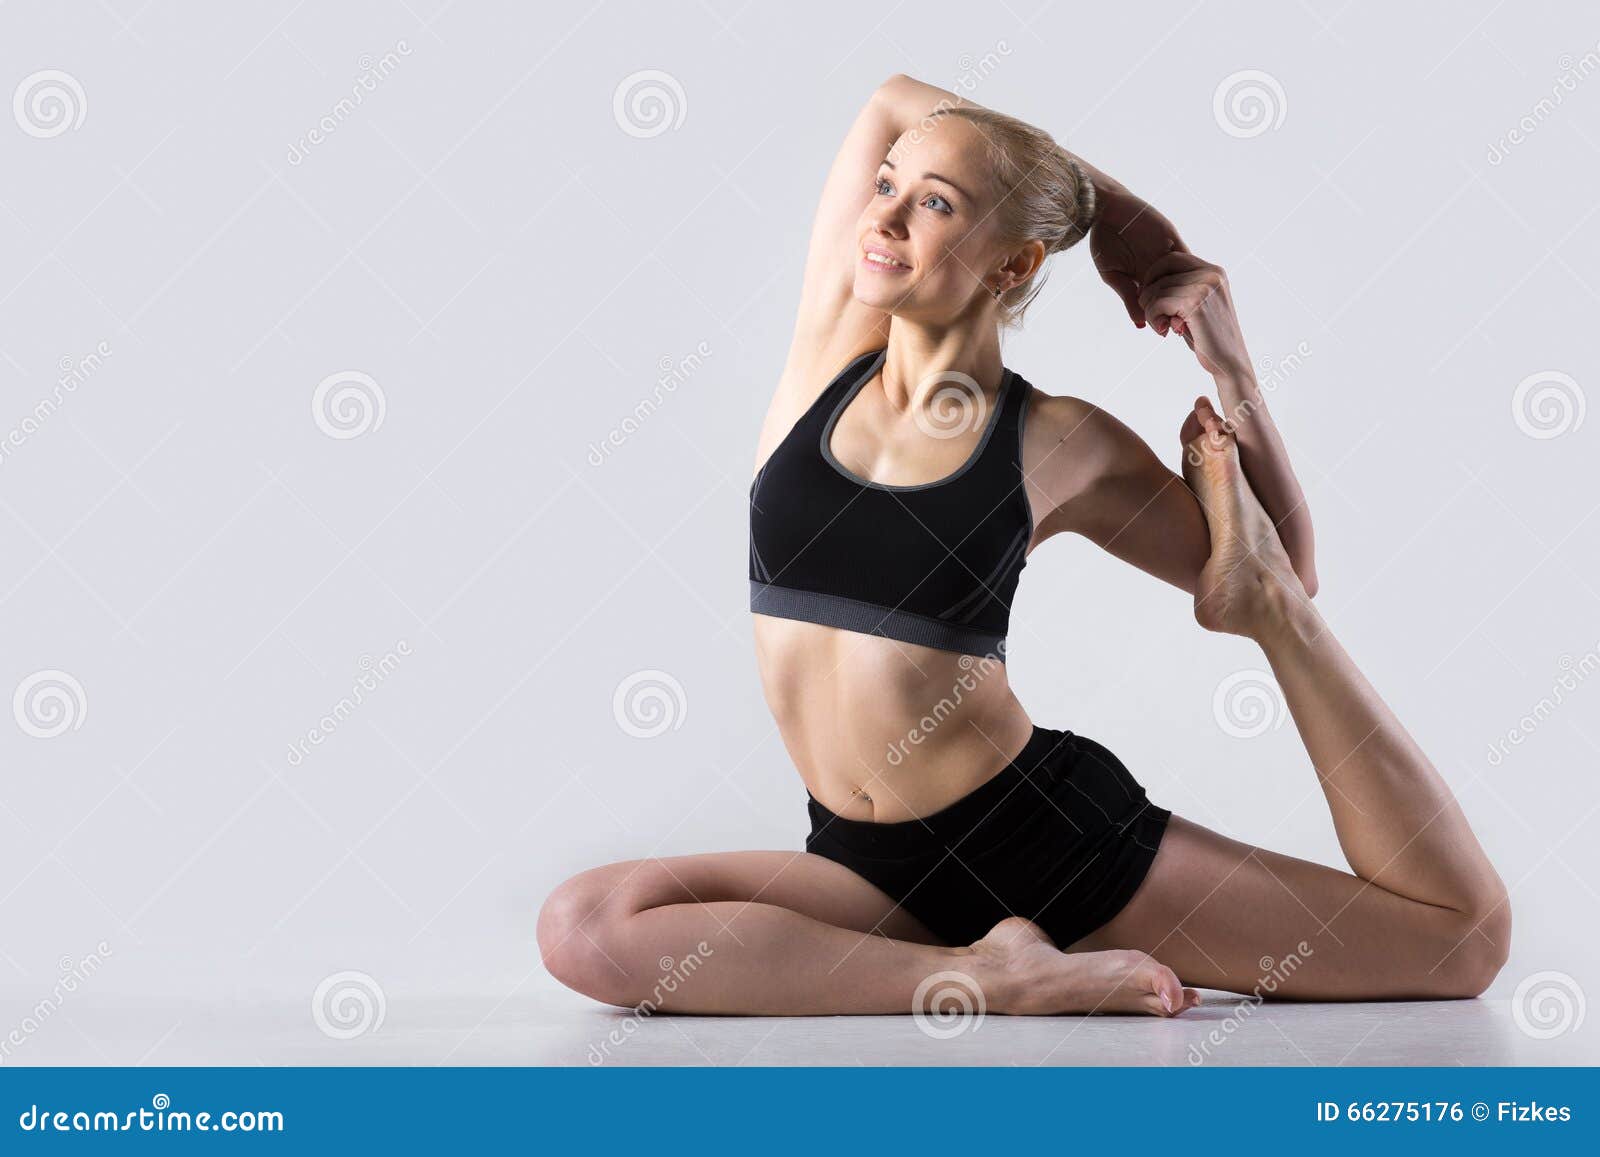 Yogi Sticks: 5-2 Standing Poses and 5-4 Moon Salutation variation | Yoga,  Moon salutation, Hip opening yoga